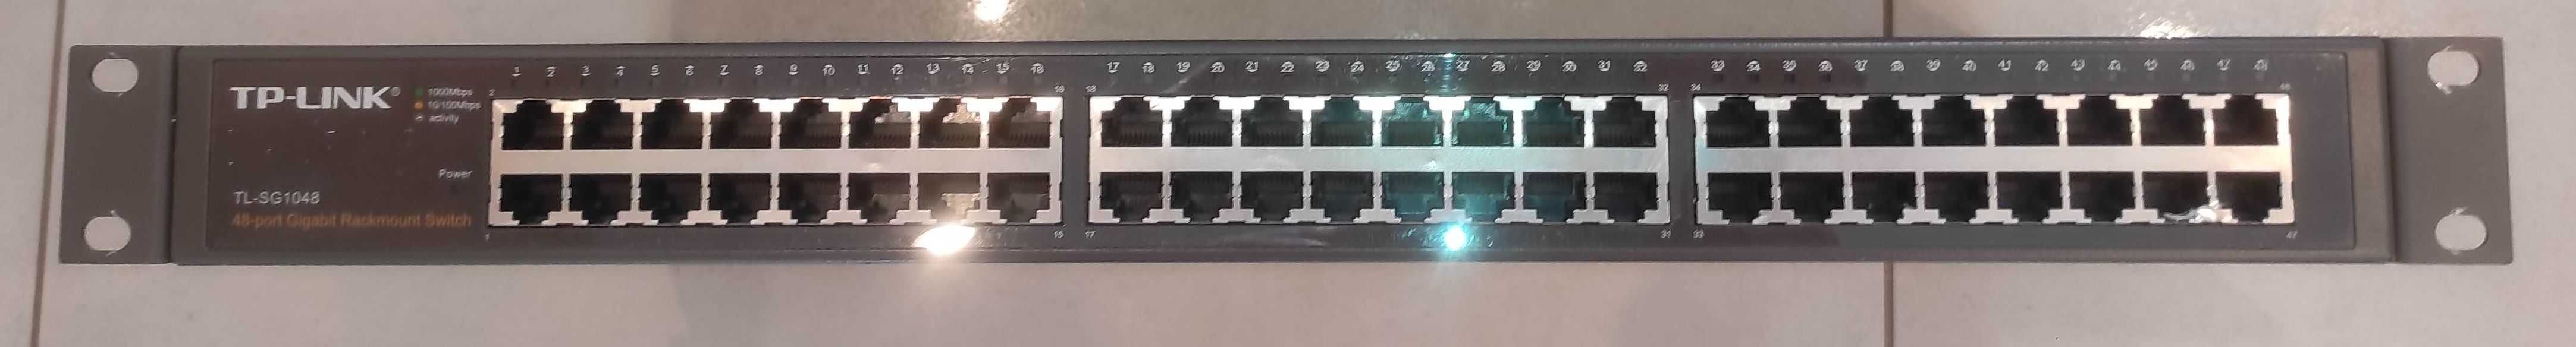 Switch, przełącznik TP-LINK TL-SG1048